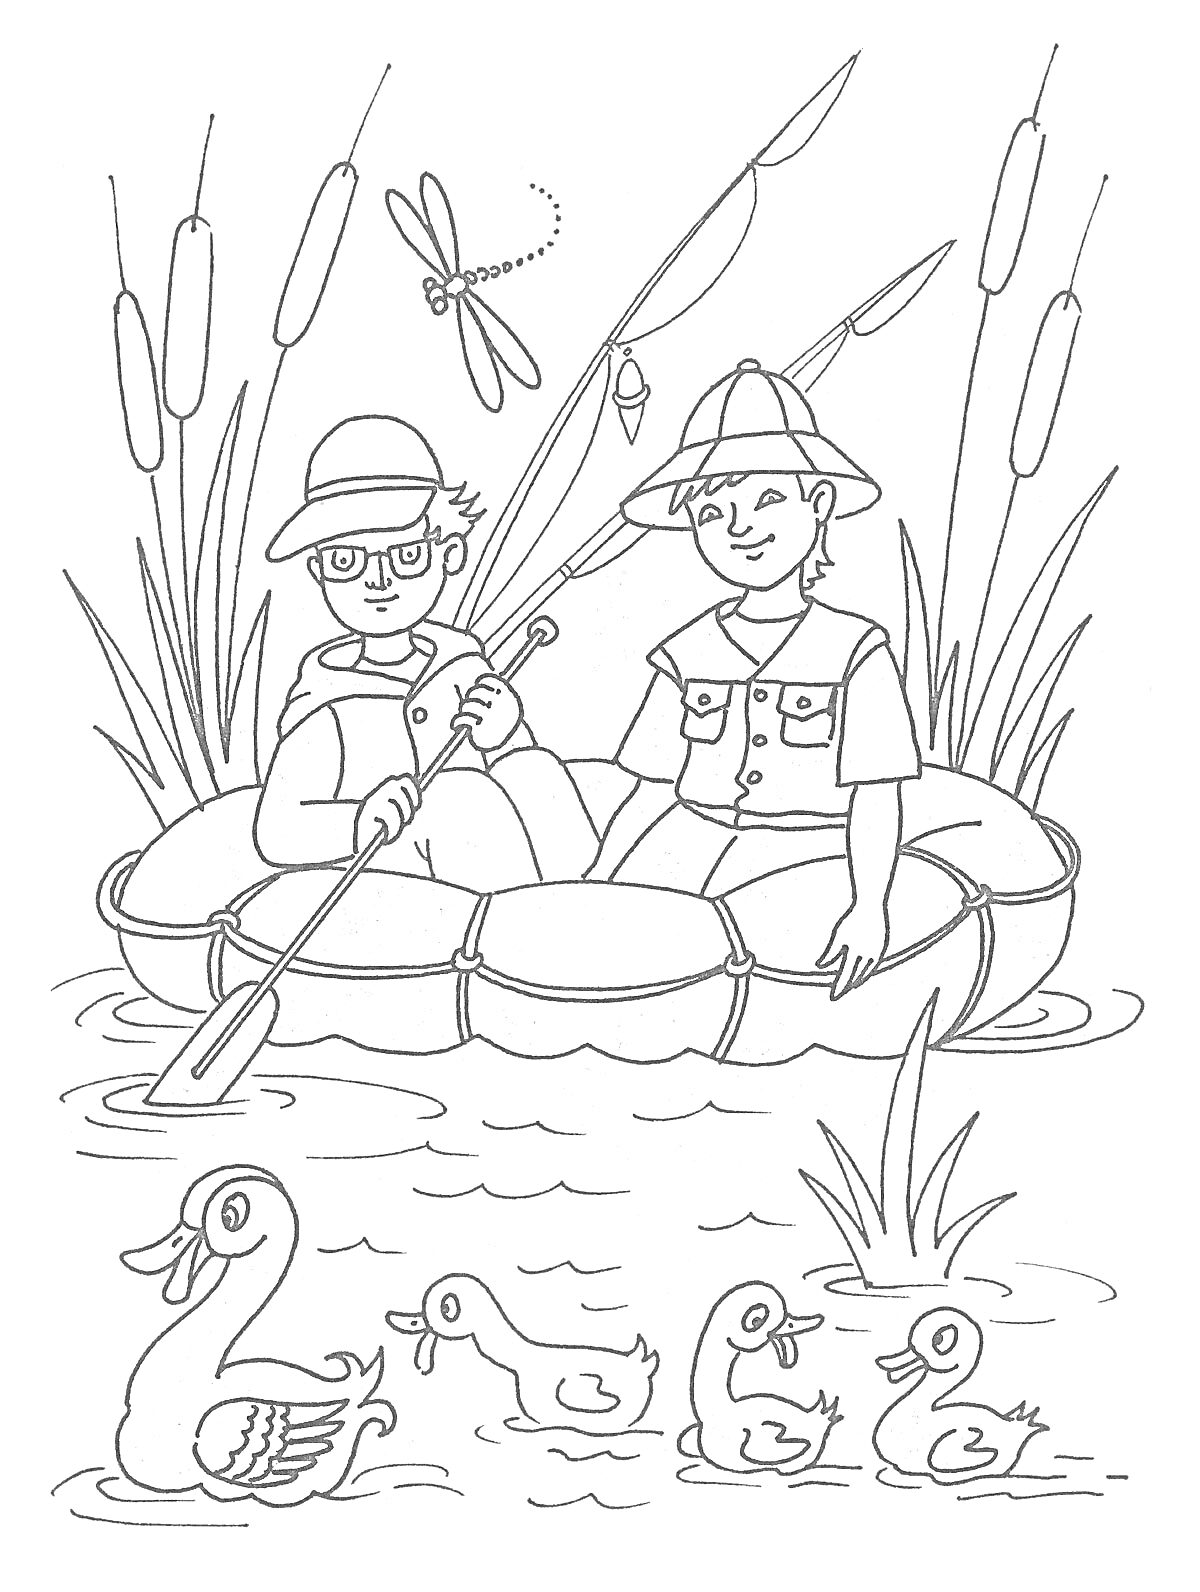 Дети в лодке среди камышей с утятами и стрекозами